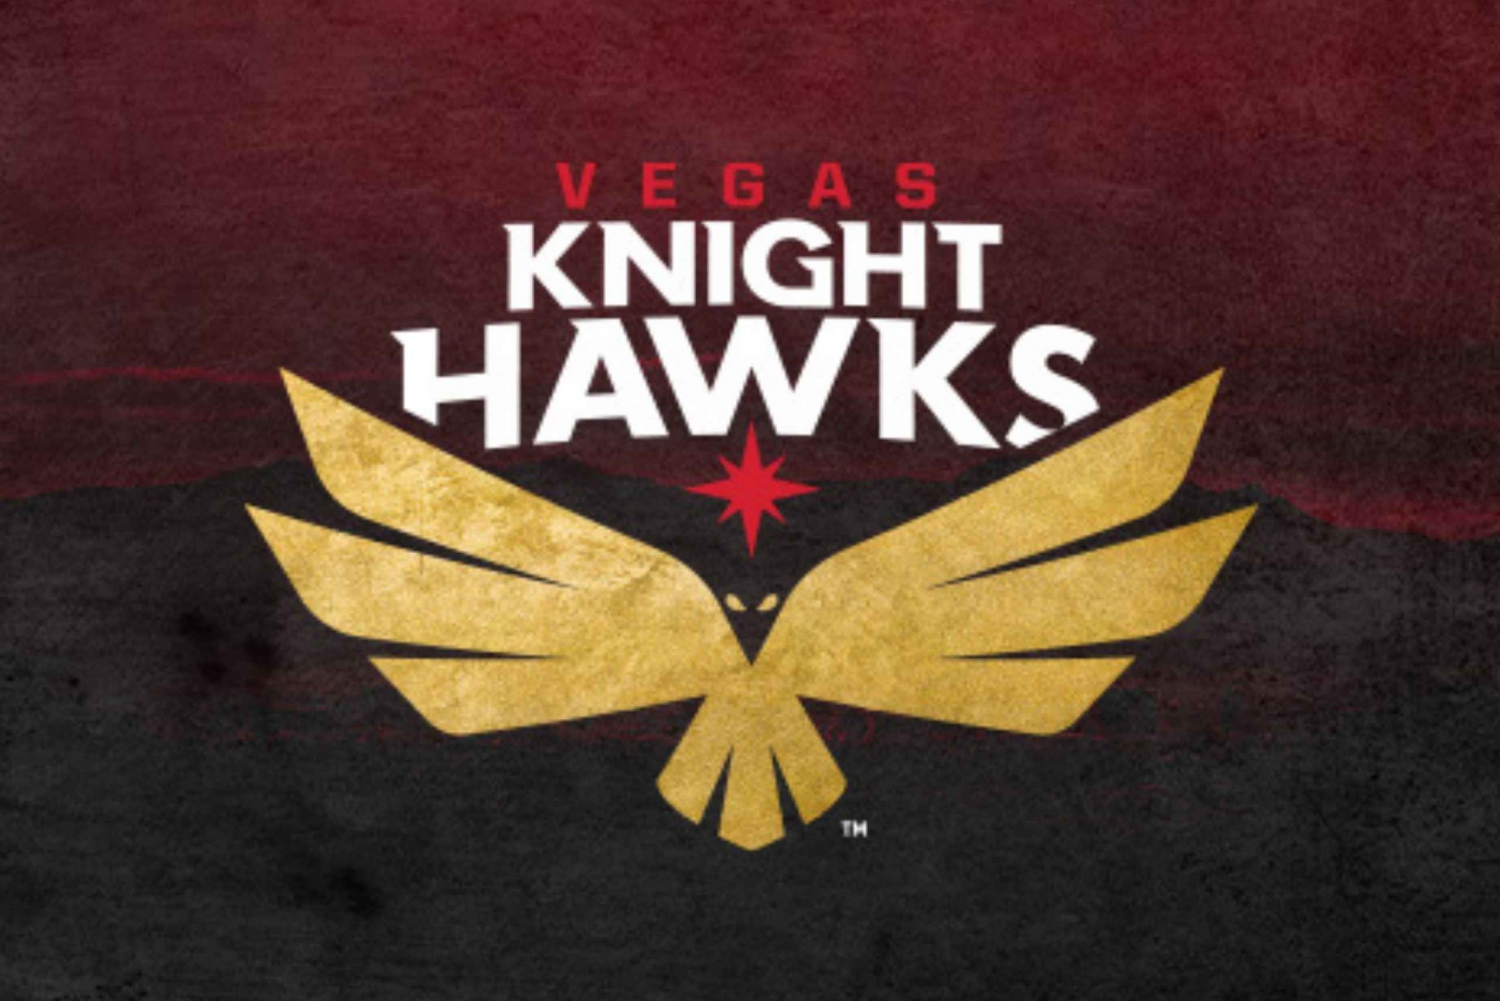 Vegas Knight Hawks - ligaen for innendørs fotball